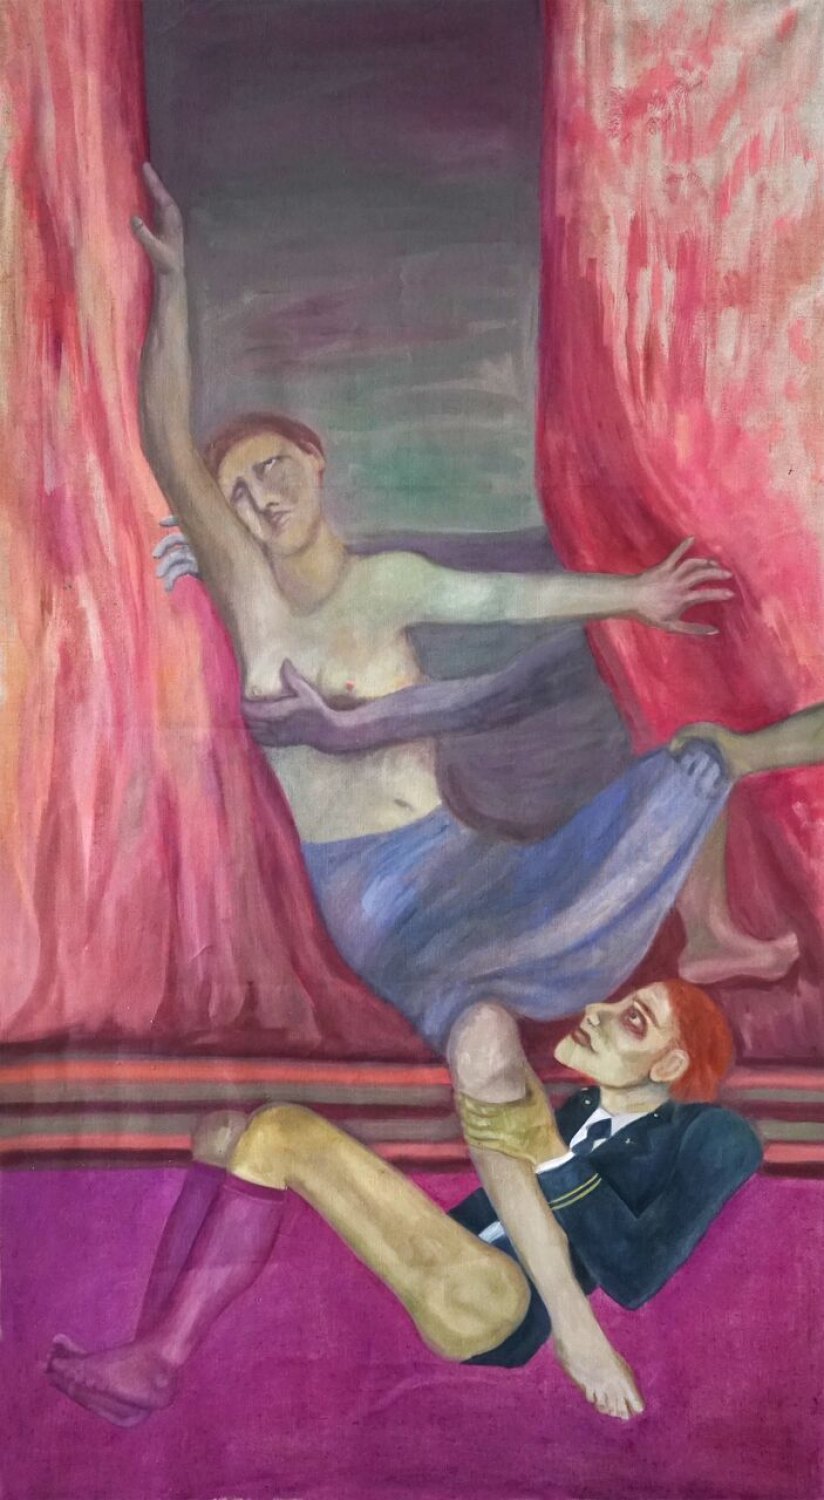 Jill Mulleady The Rape, 2017 Oil on linen, 173 x 93 cm